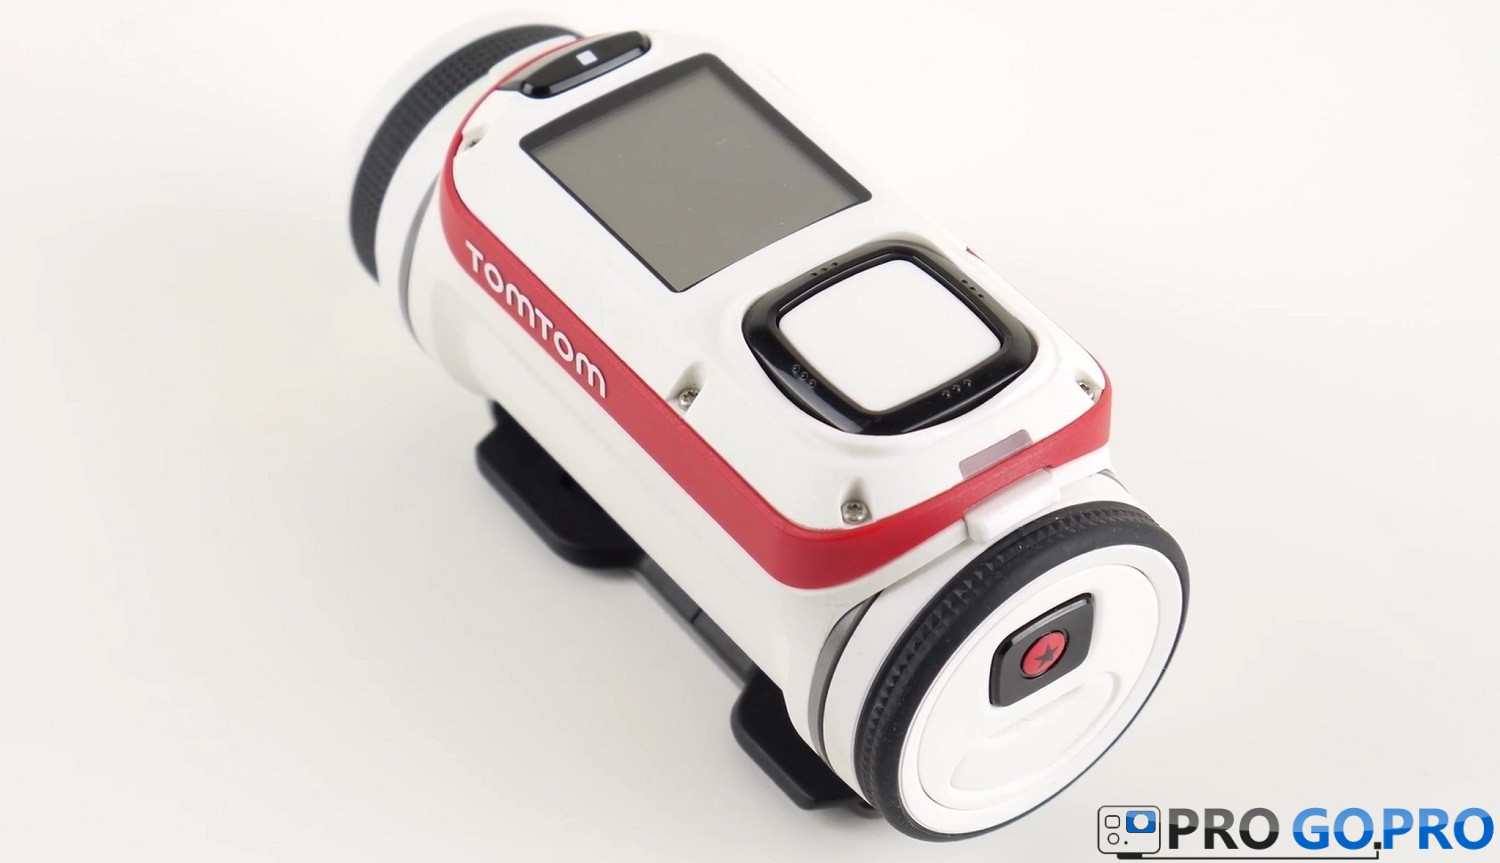 Дизайн и особенновсти экшн камеры TomTom Bandit